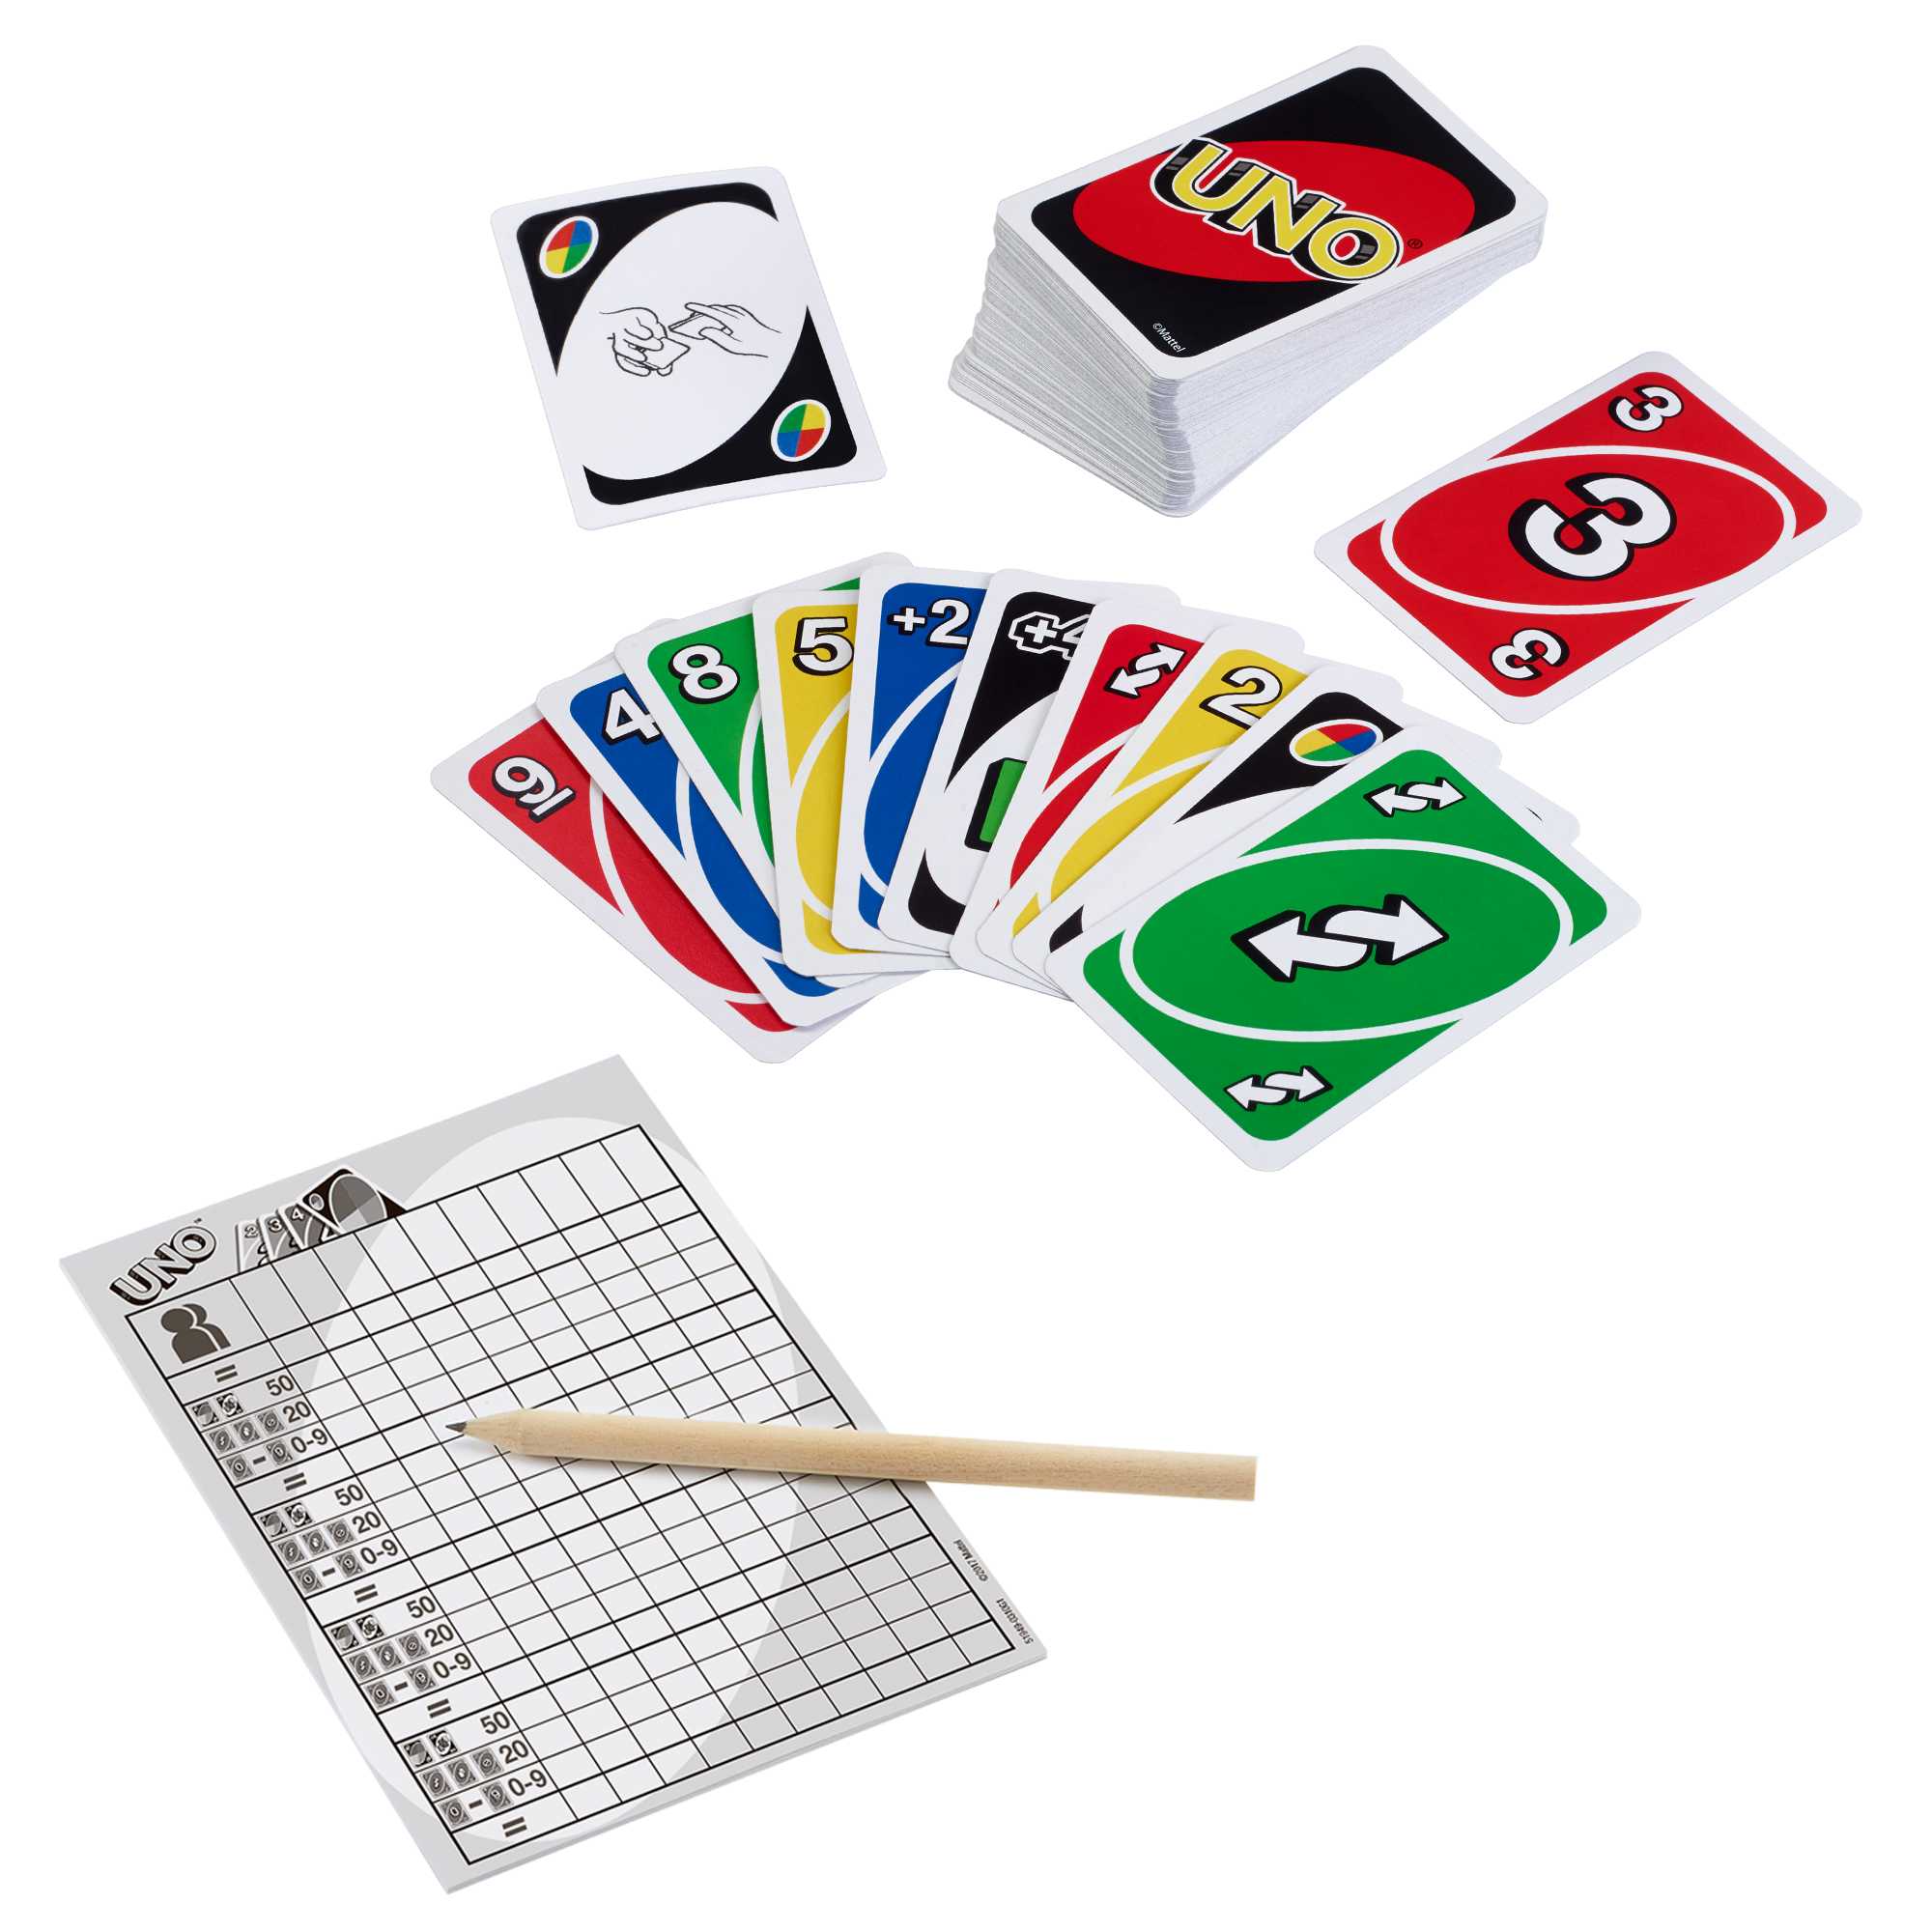  Juego de cartas Uno Deluxe : Juguetes y Juegos